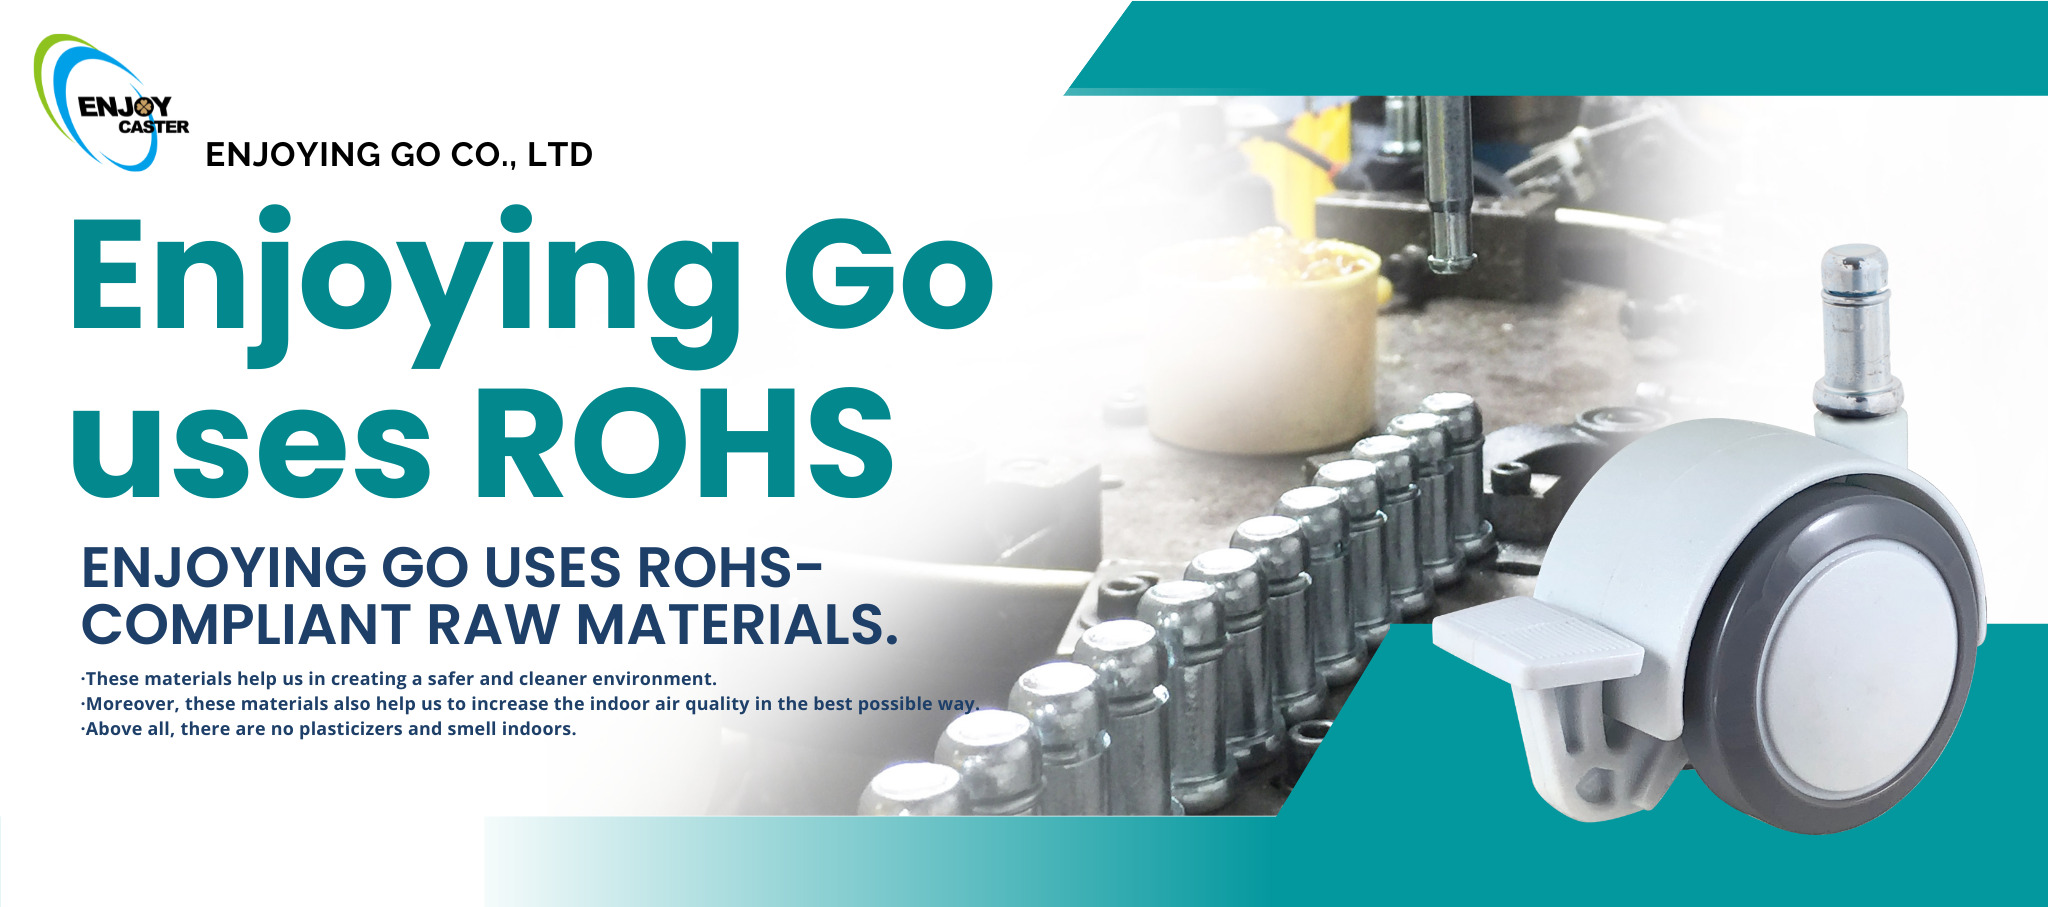 易周公司使用符合RoHS標準的原材料